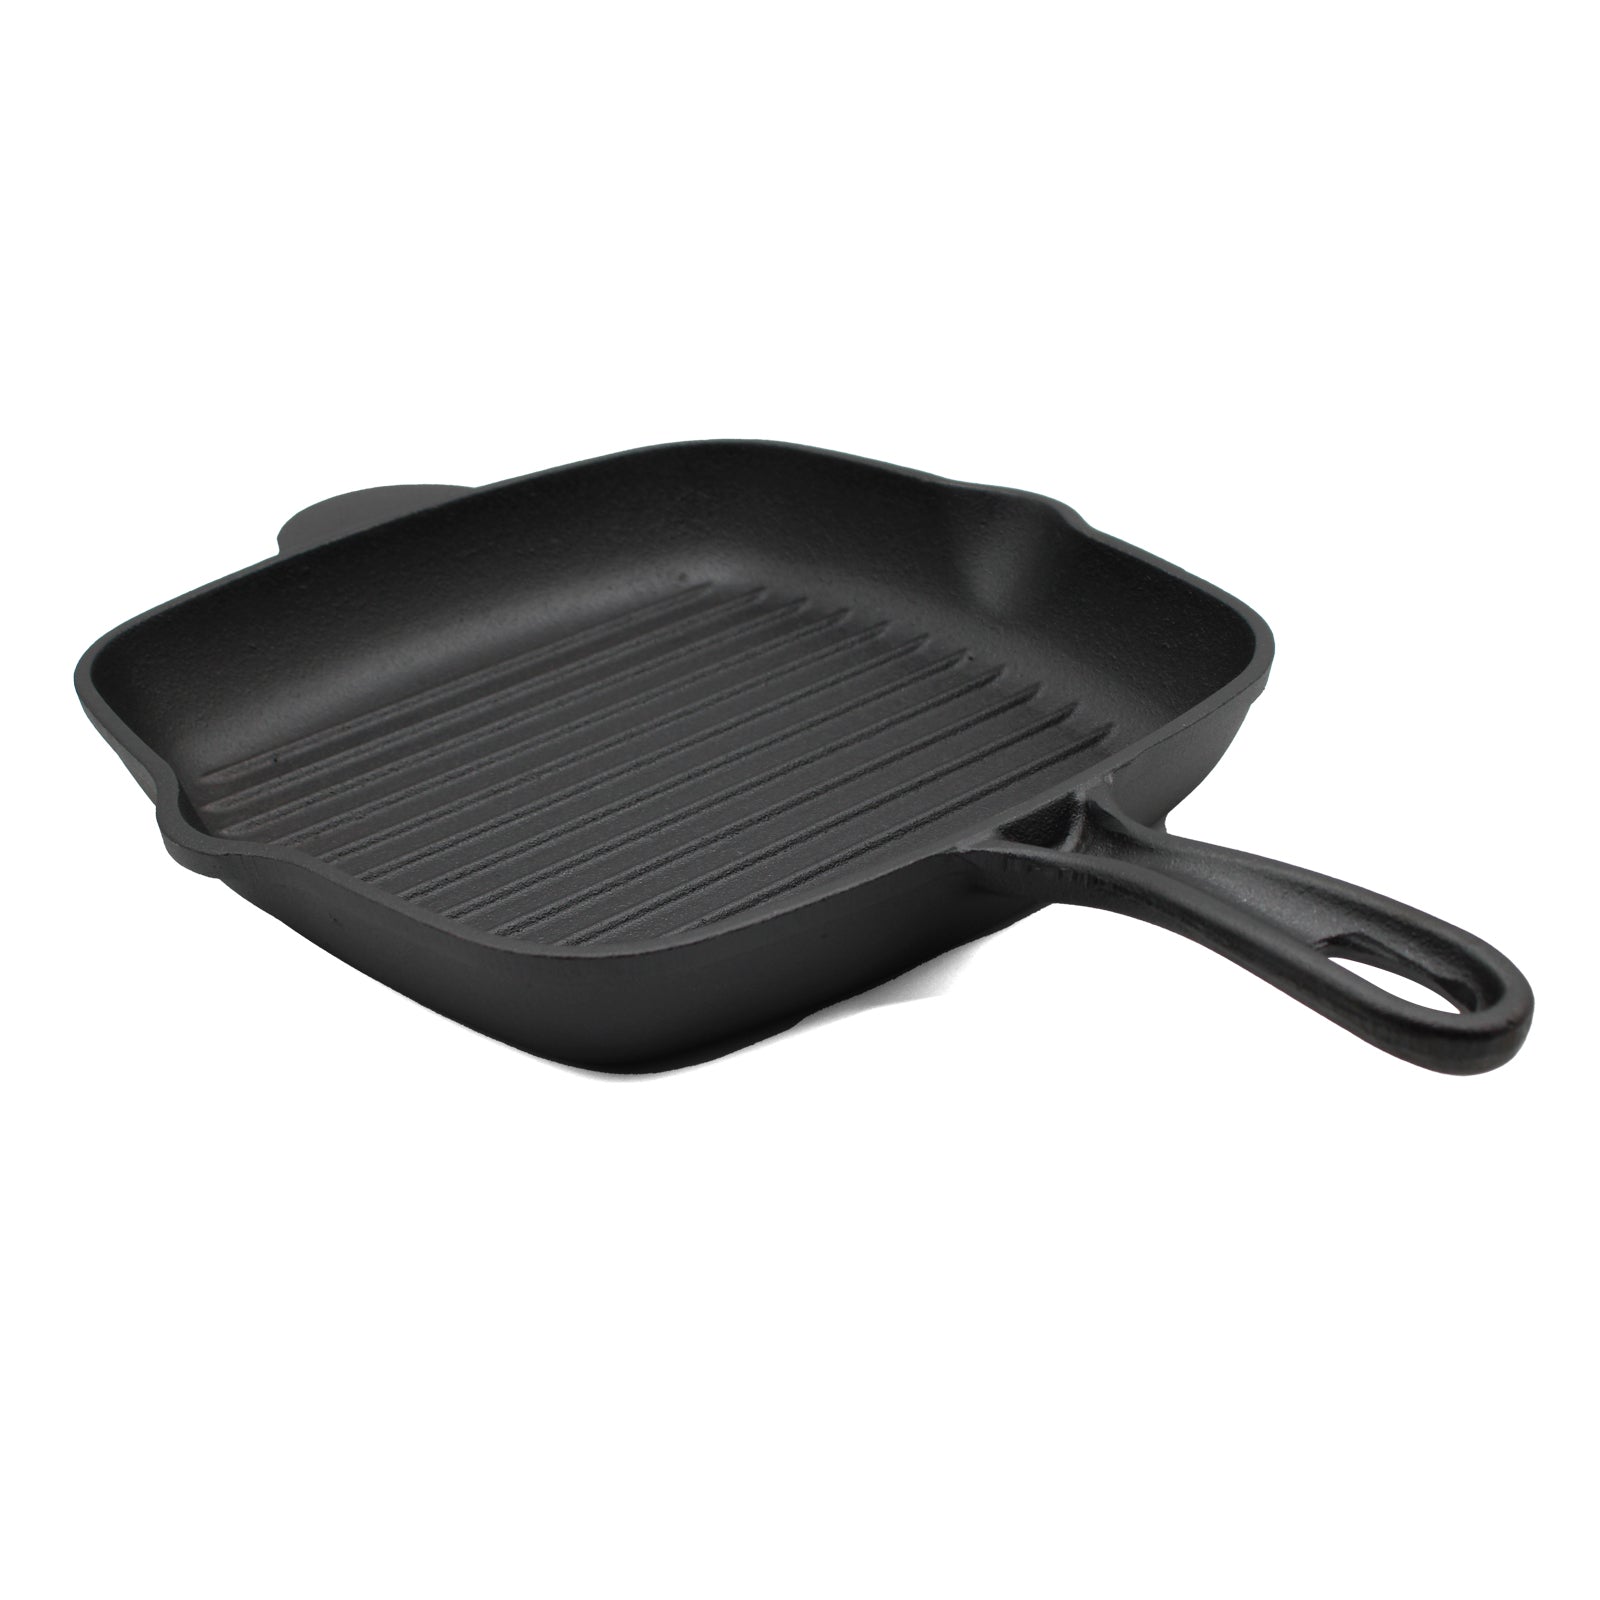 28cm Cast Iron Griddle Pan